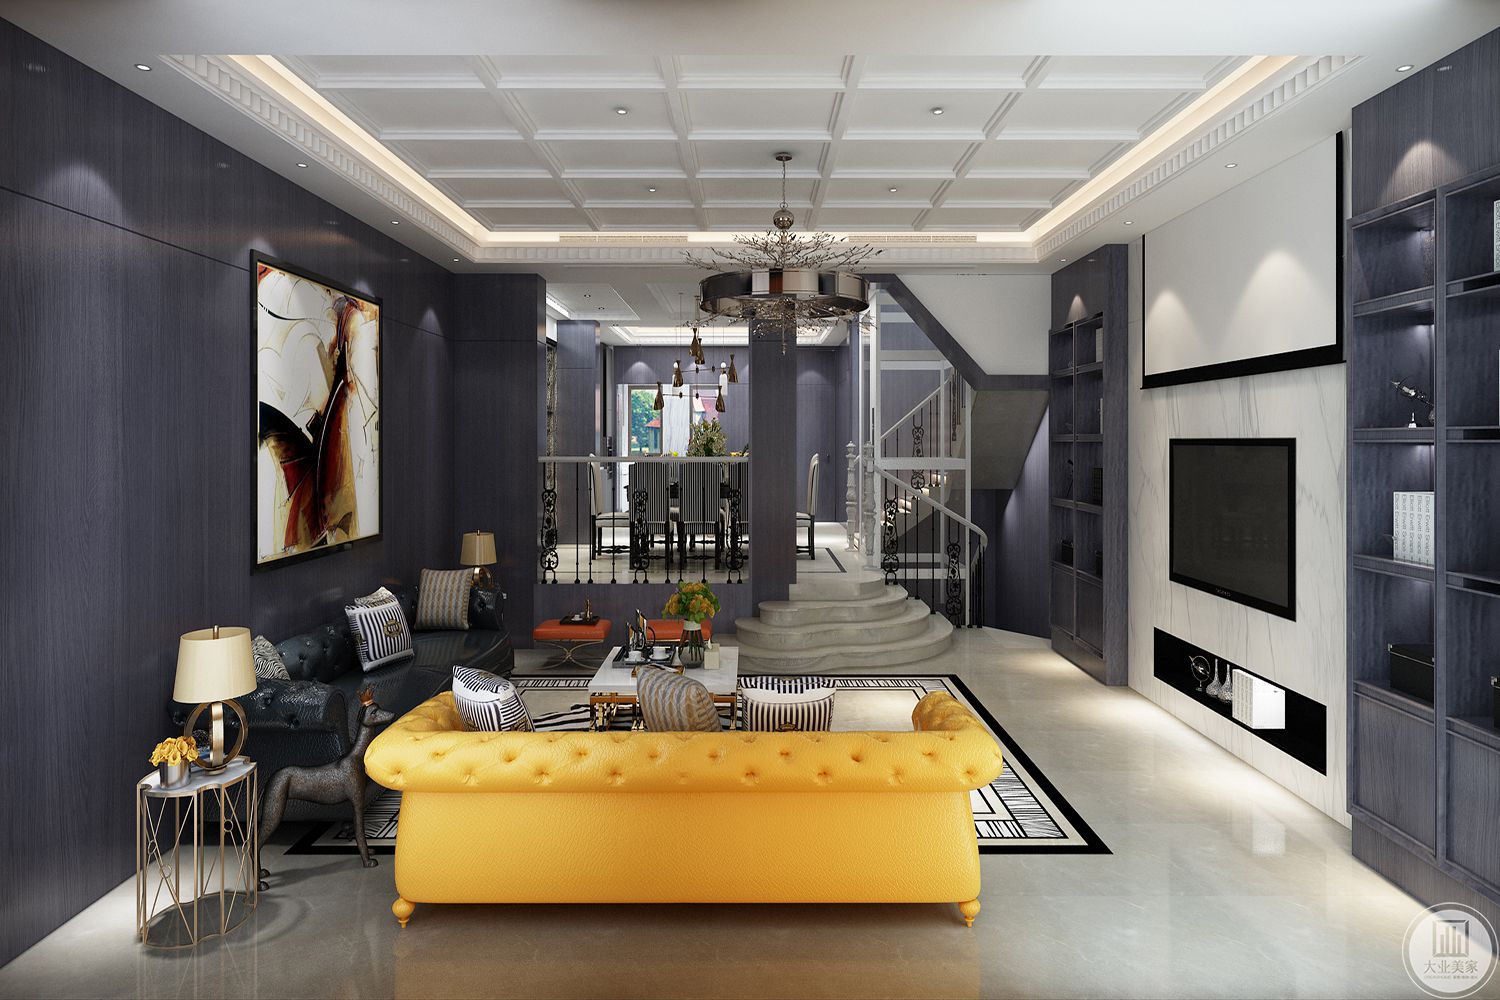 电视墙使用白色大理石与灰蓝色木作造型结合，沙发背墙延续玄关的浅蓝色，让空间更加活泼且清爽。